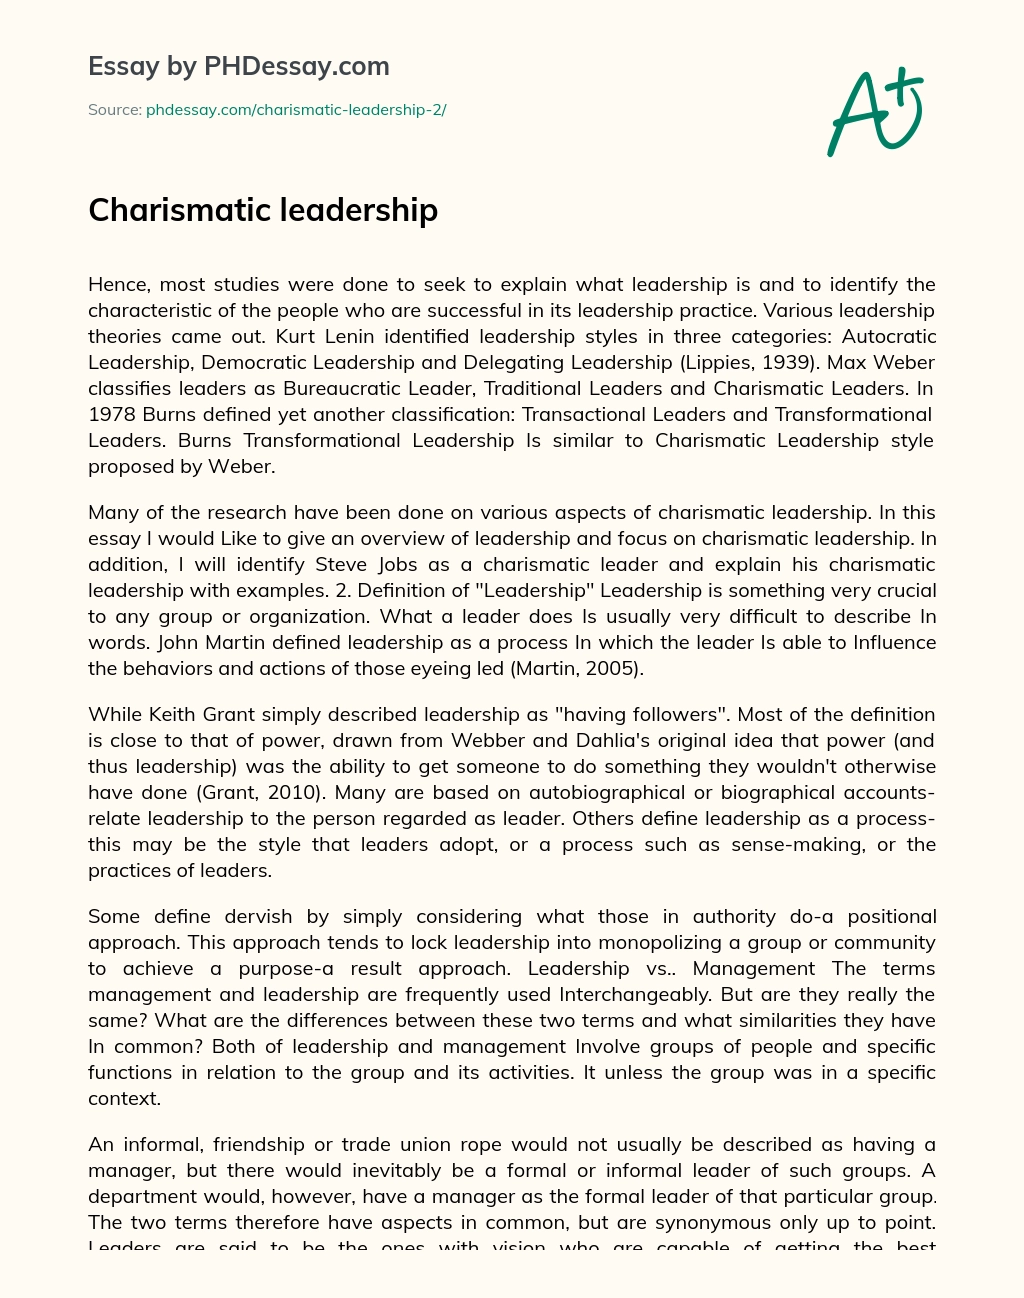 essay on charismatic leadership